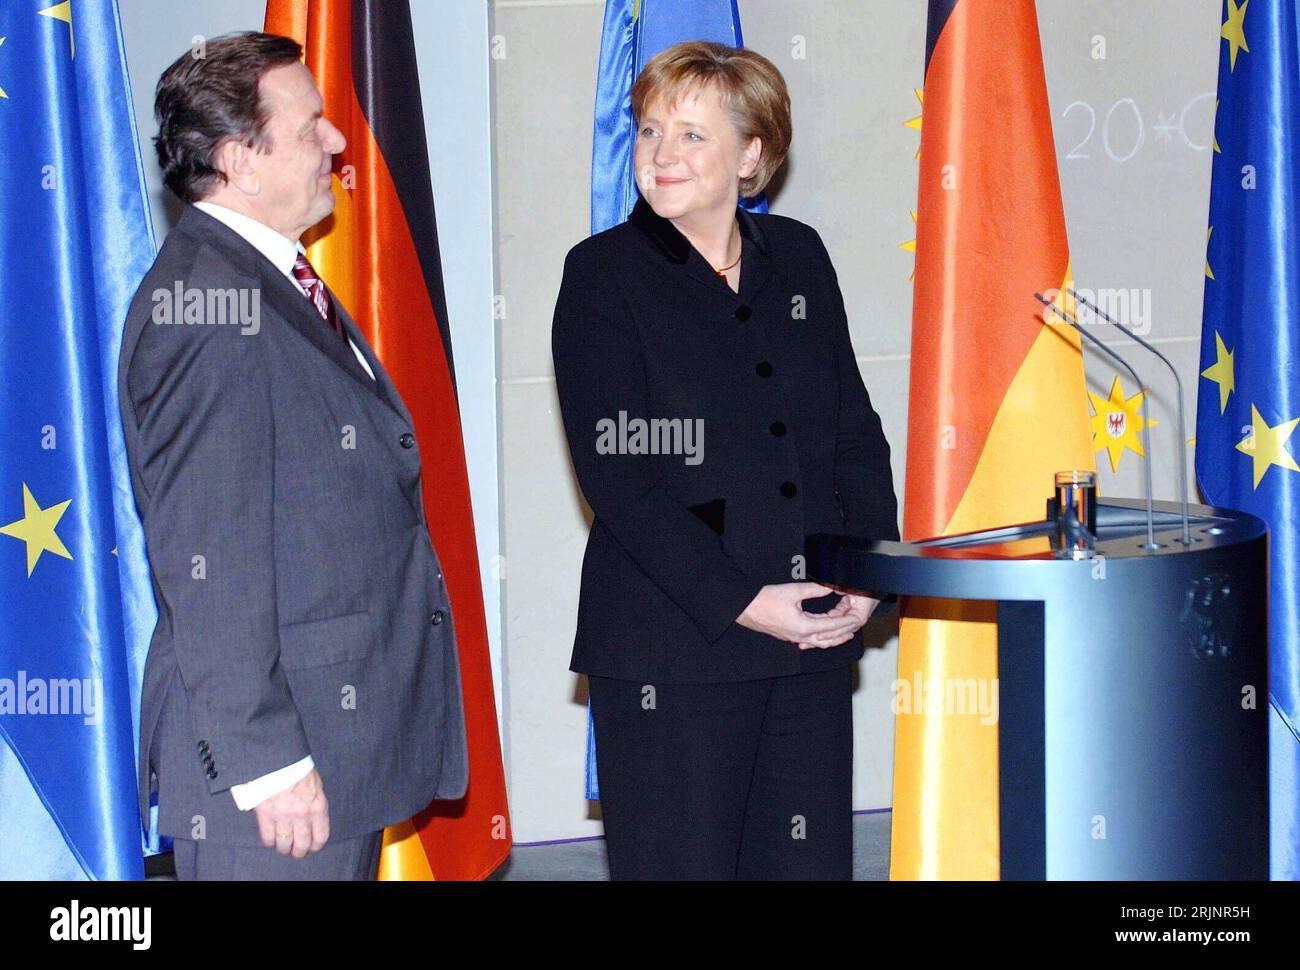 Bundeskanzlerin Angela Merkel Re., GER/CDU und ehemaliger Bundeskanzler Gerhard Schröder GER/SPD lächeln sich zufrieden an anlässlich der Kanzleramtsübergabe in Berlin - PUBLICATIONxNOTxINxCHN Stockfoto